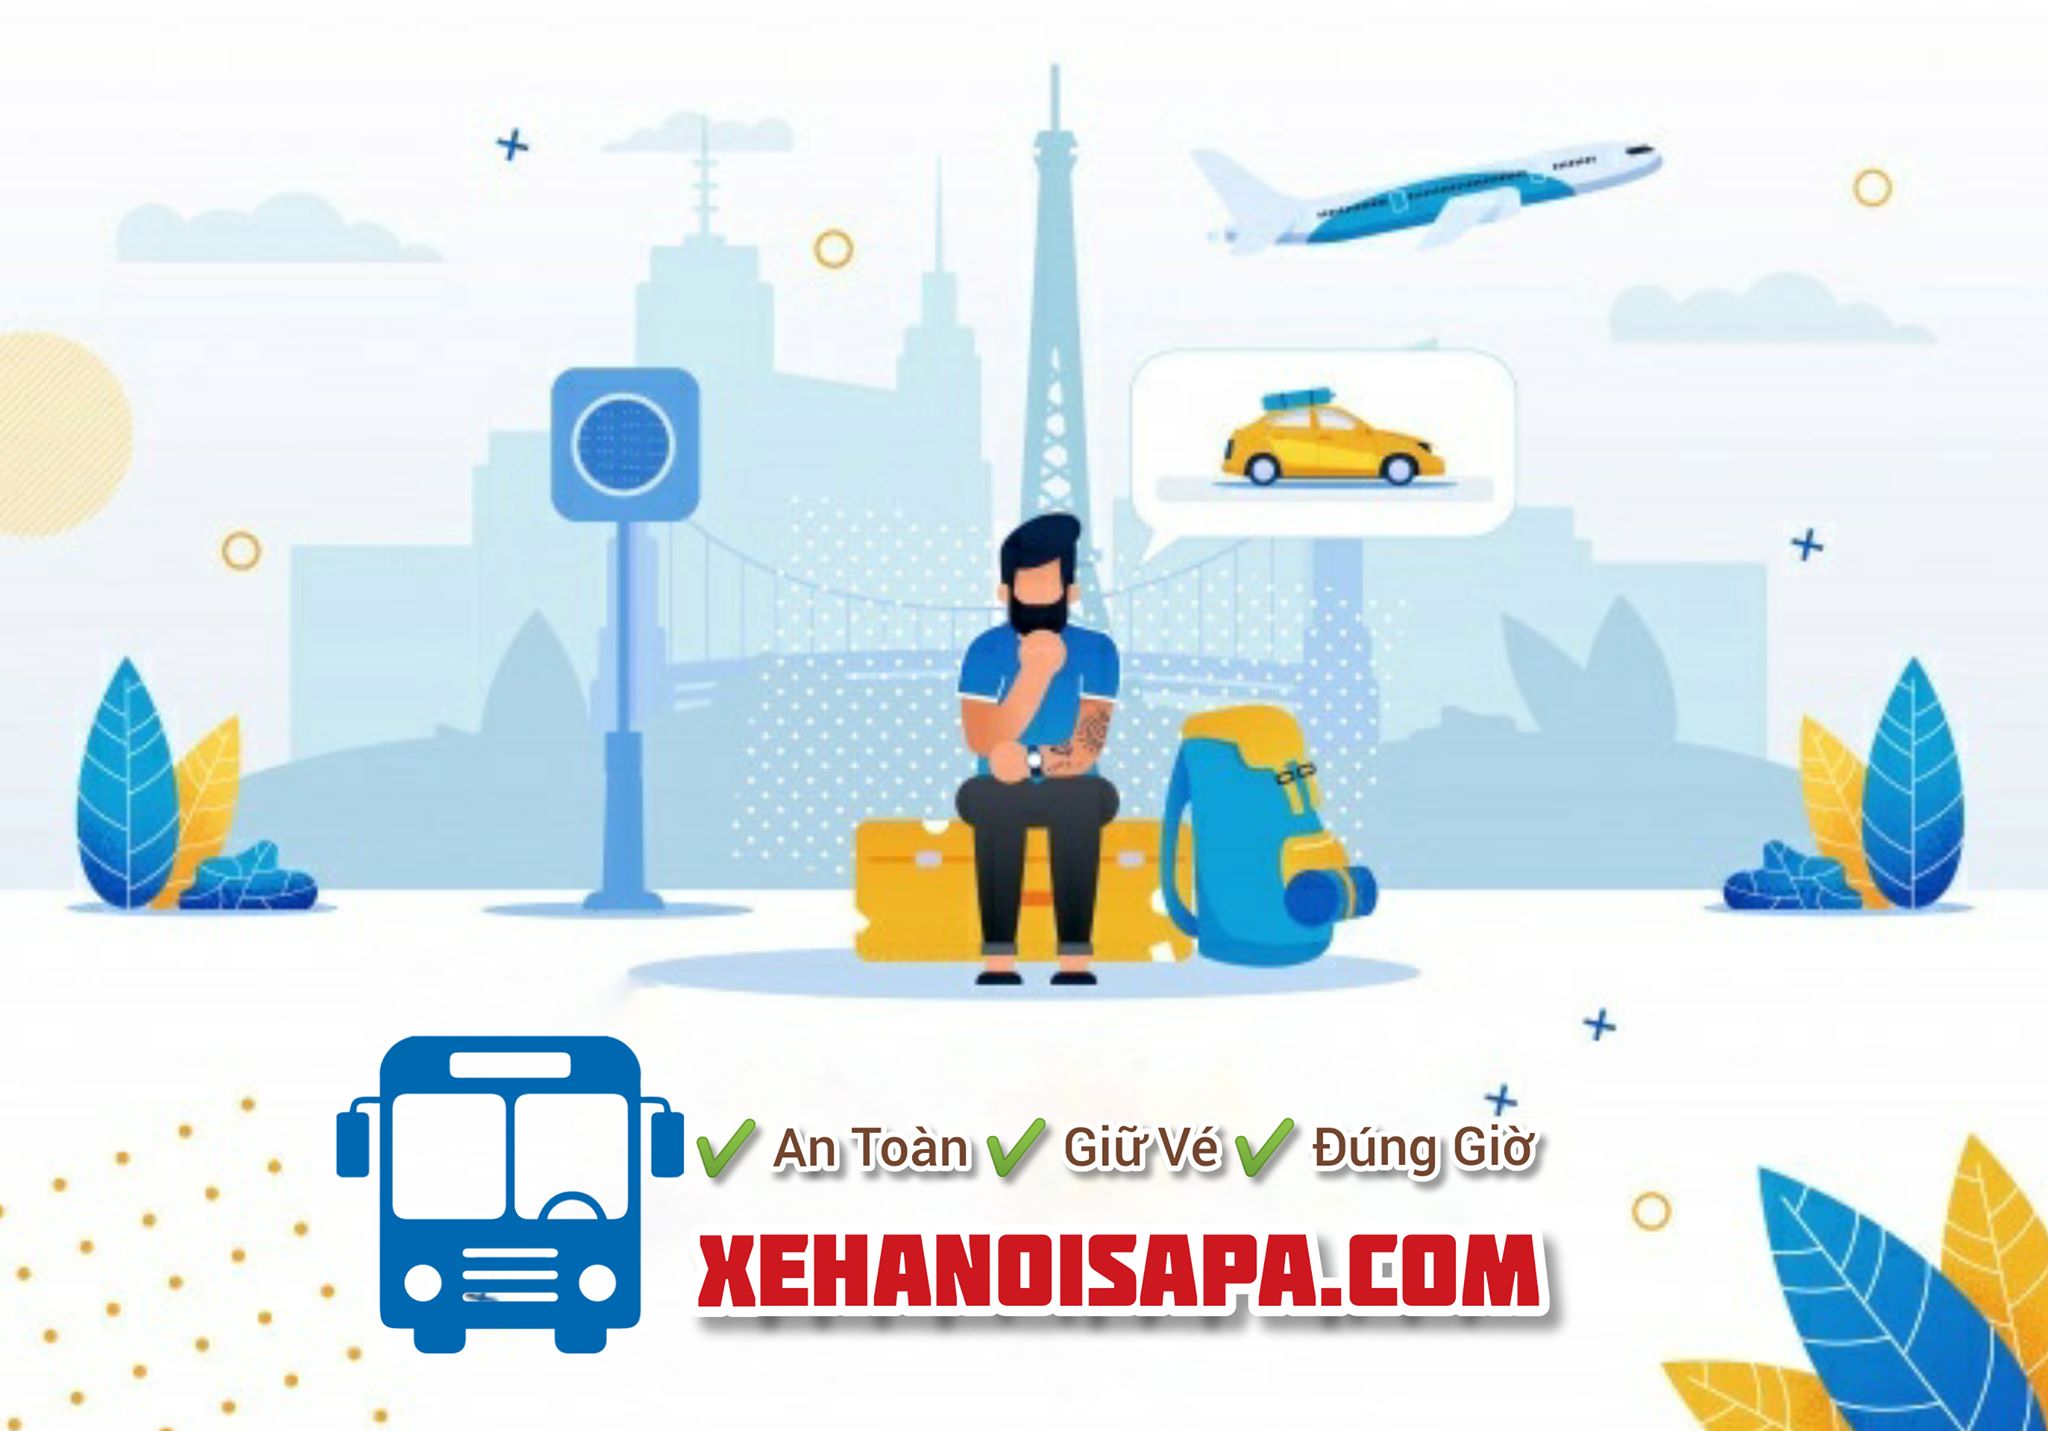 Hãng xe Fansipan Expres Bus - Booking nhanh nhất tại Xehanoisapa.com